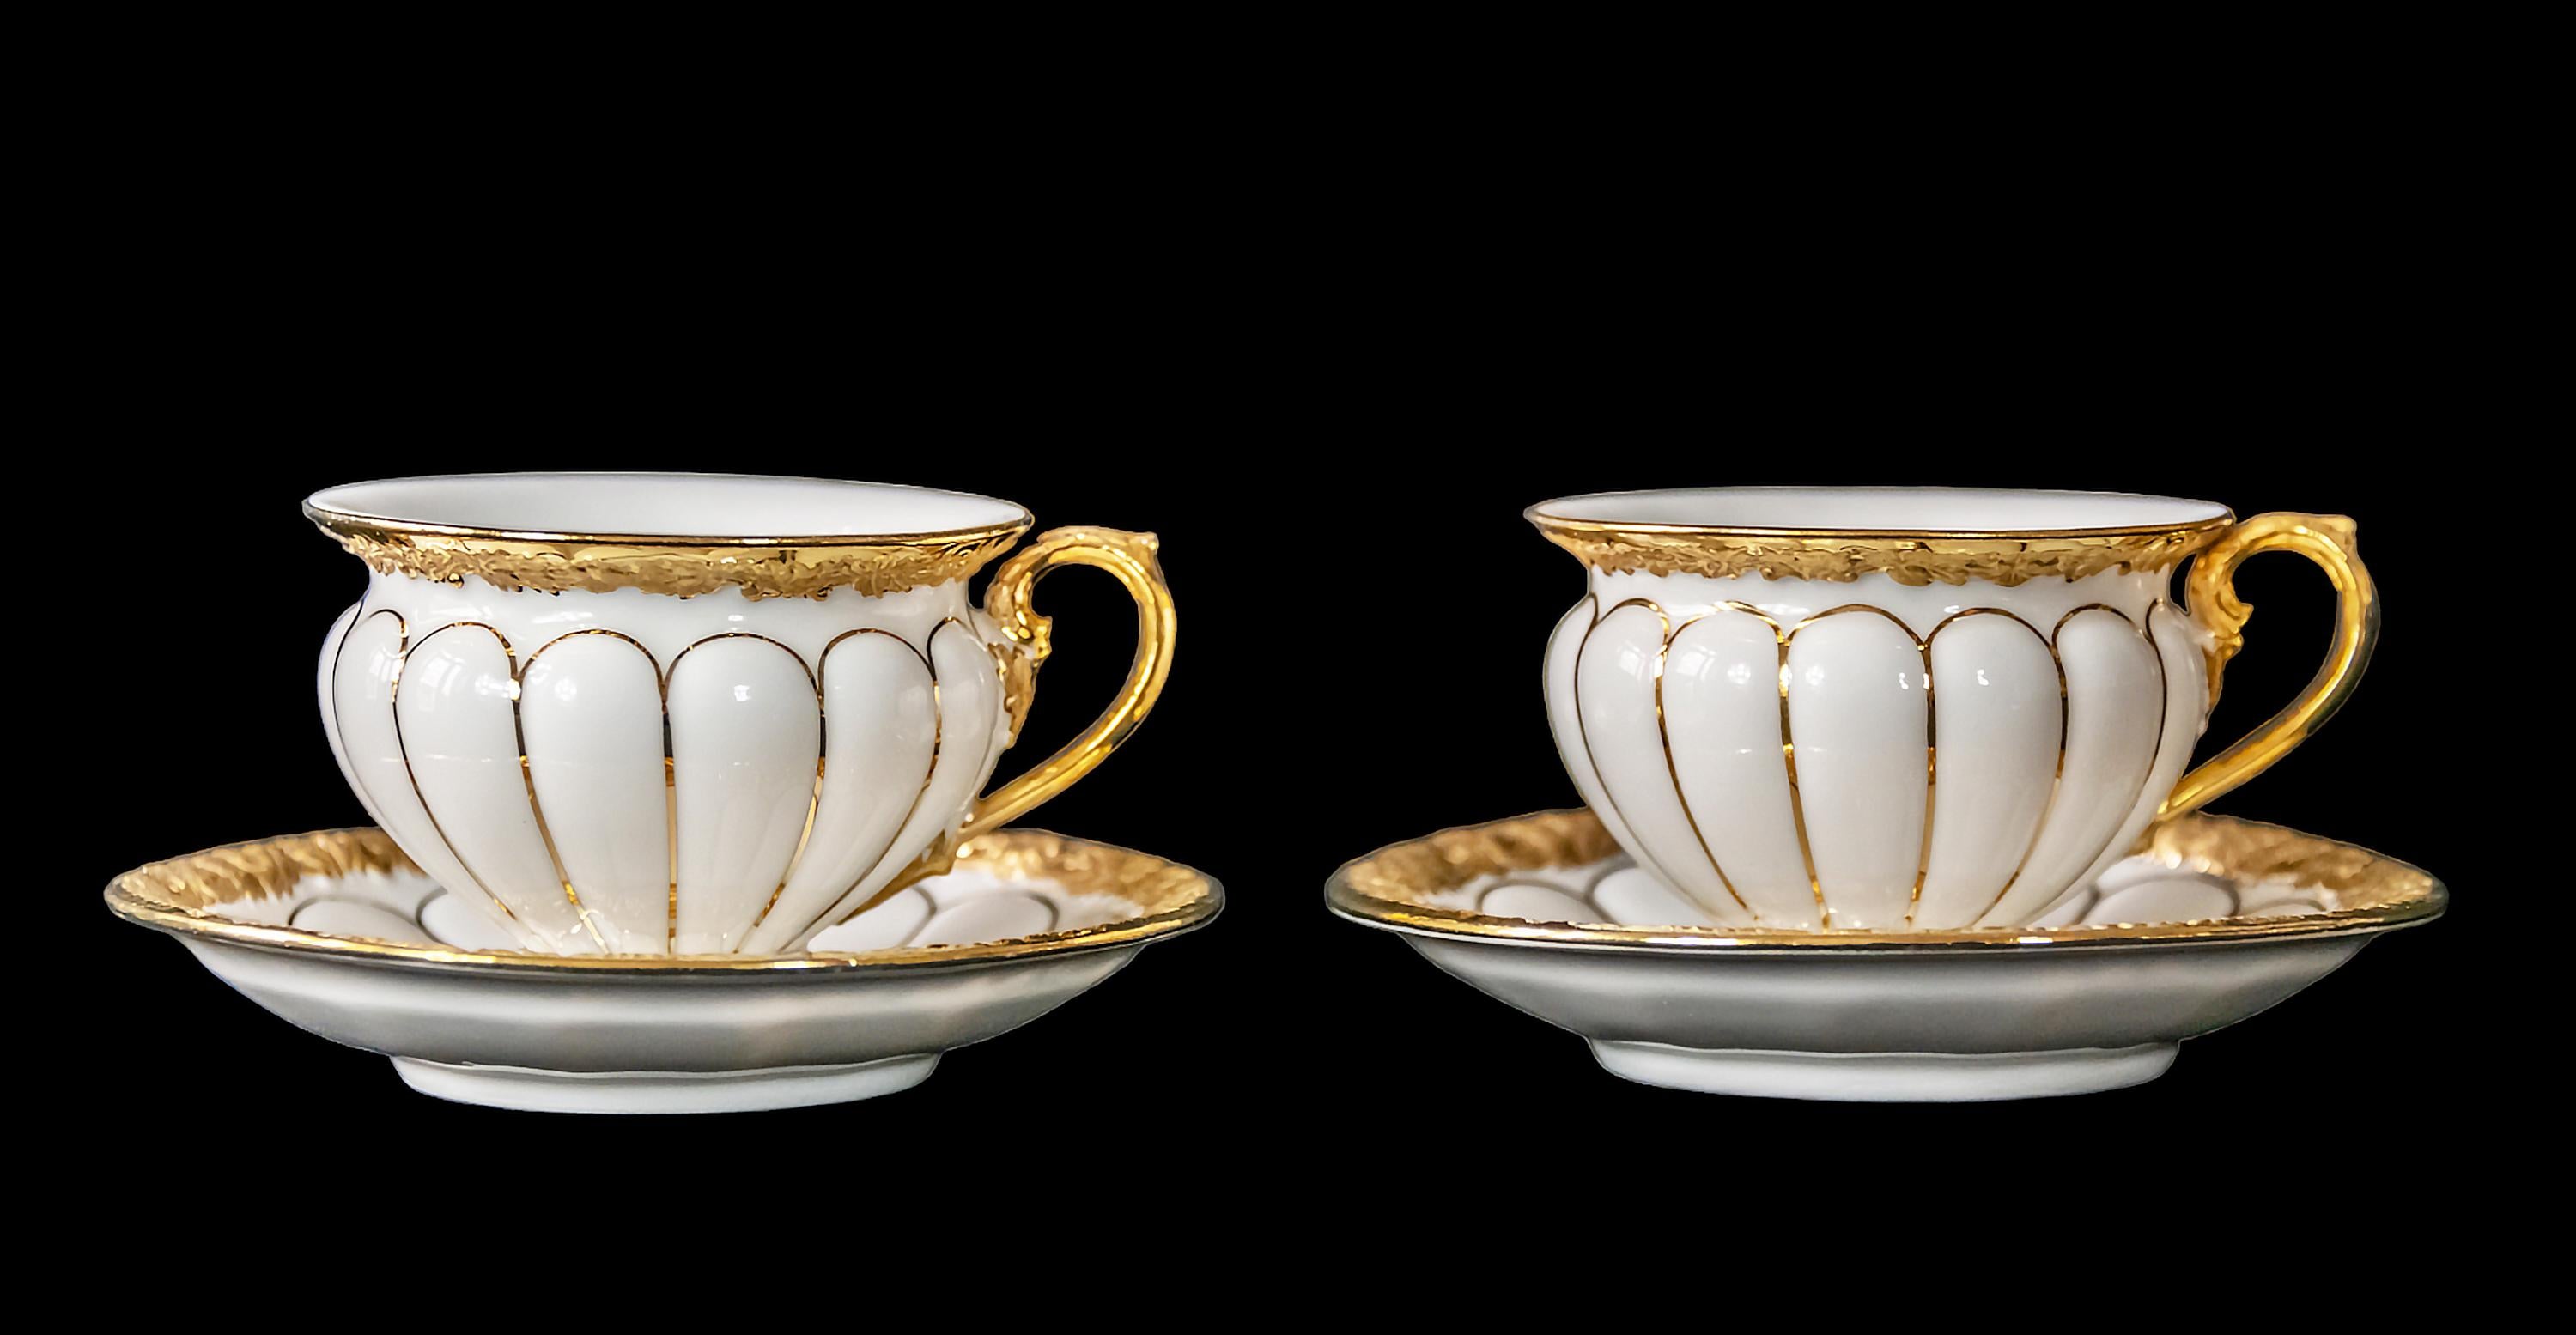 Paire de tasses à café en porcelaine de Meissen avec soucoupes richement décorées d'or.
Mesures :
Coupe : h 5 x 7,5 x 9 cm
Soucoupe : 12 cm

.